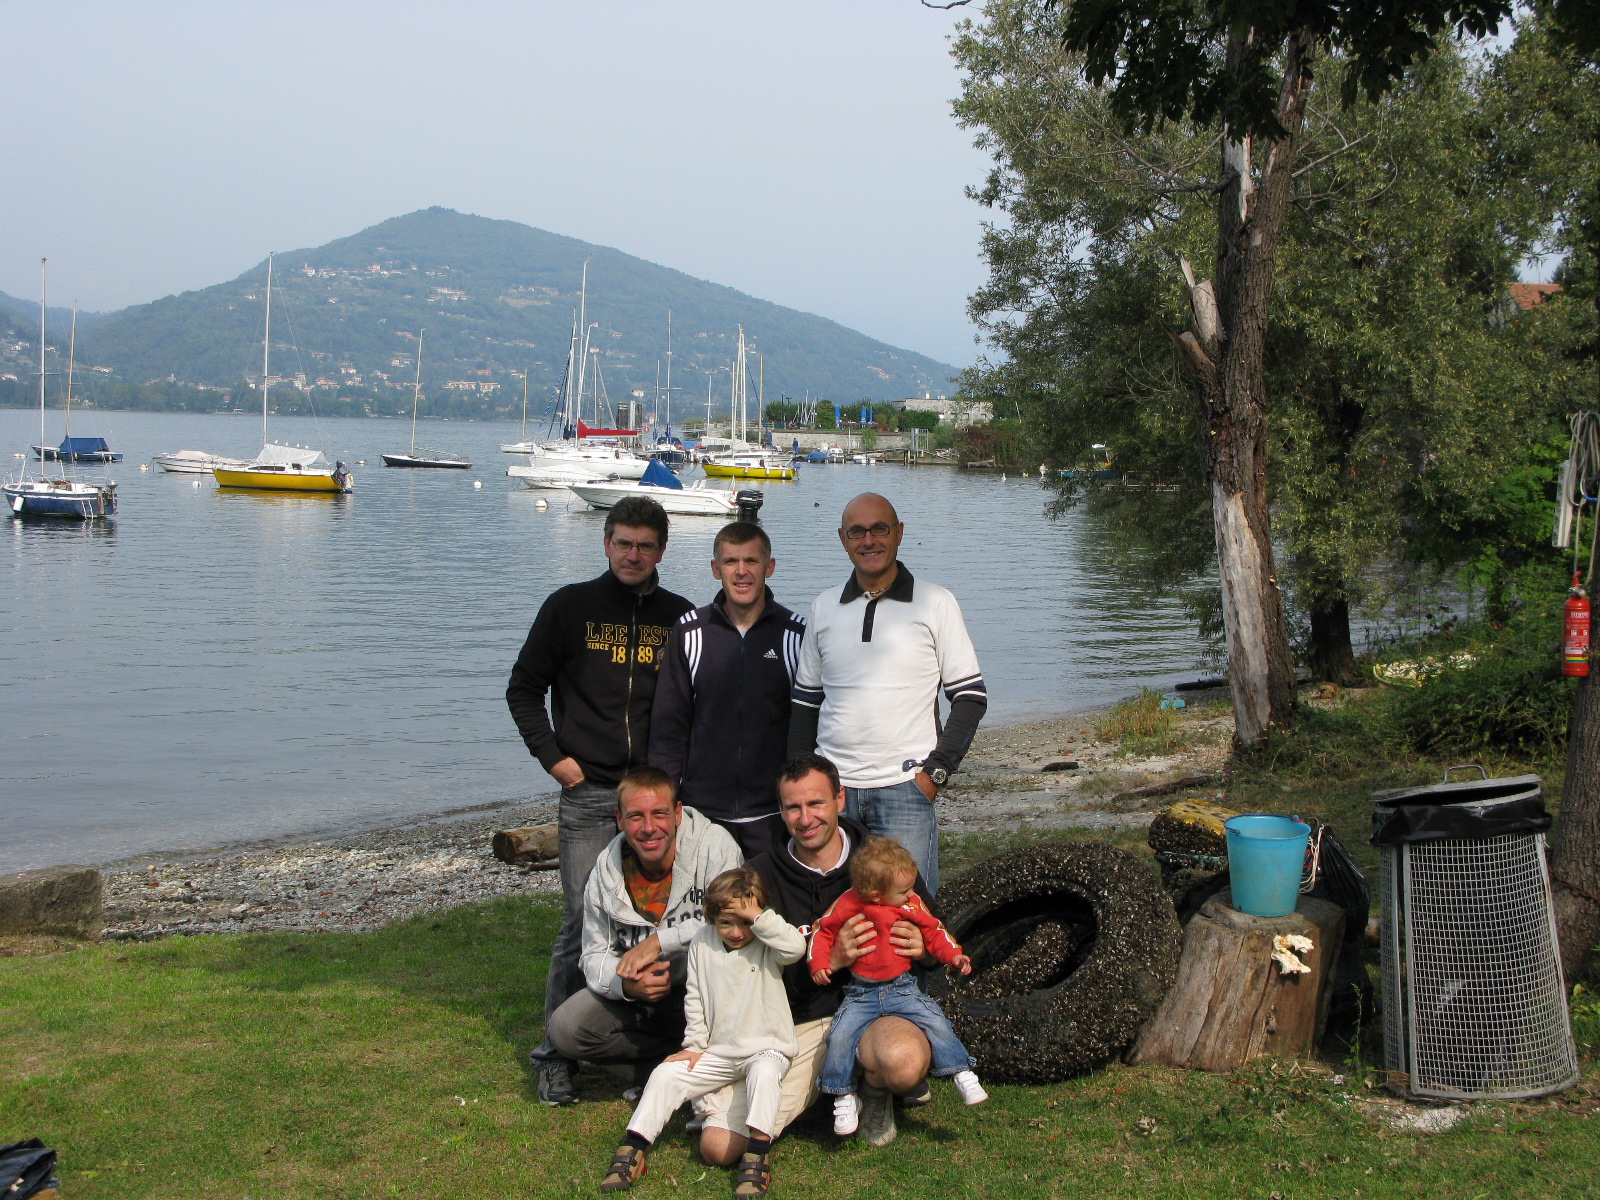 domenica, 21 settembre 2008, beach cleaning. Dall'alto a sinistra: Massimiliano, Davide, Mauro, Siimone, Andrea e i piccoli Elia ed Anita